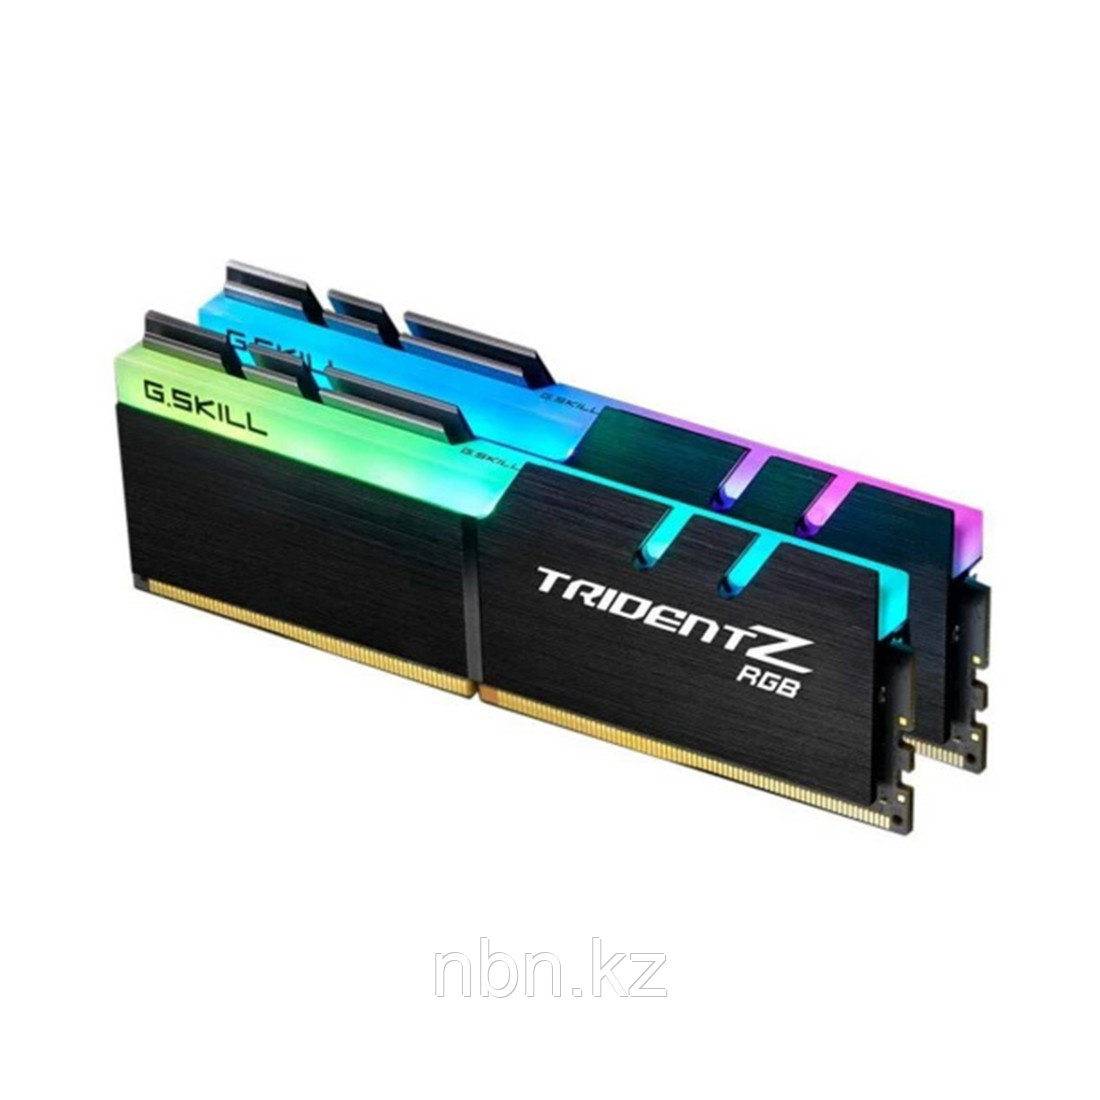 Комплект модулей памяти G.SKILL TridentZ RGB F4-3200C16D-16GTZR DDR4 16GB (Kit 2x8GB) 3200MHz, фото 1